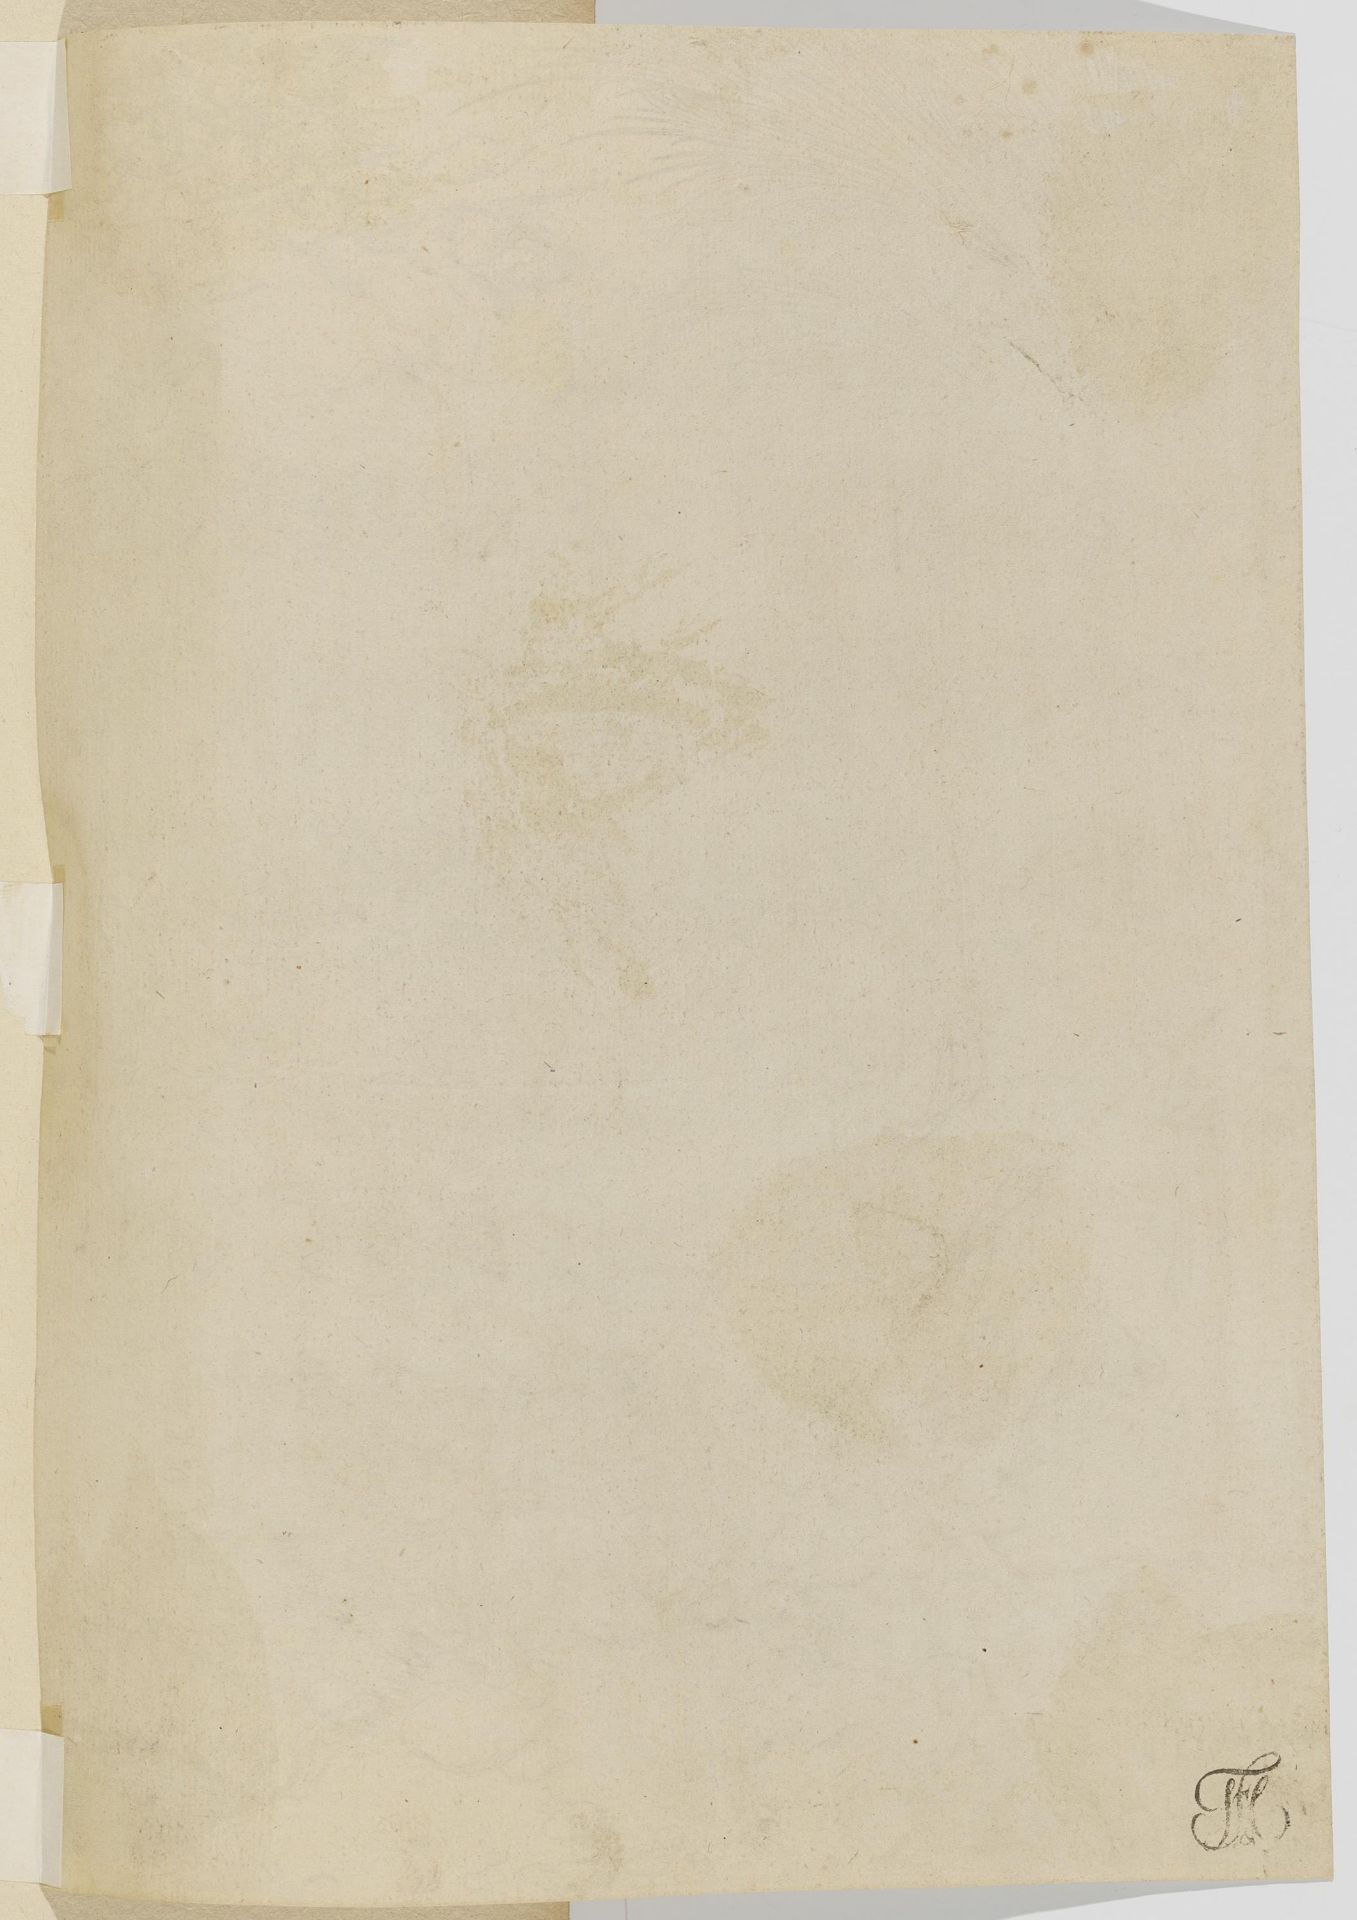 Marcantonio Raimondi ca. 1480 Molinella - 1534 Bologna: Life of the Virgin - Image 3 of 20